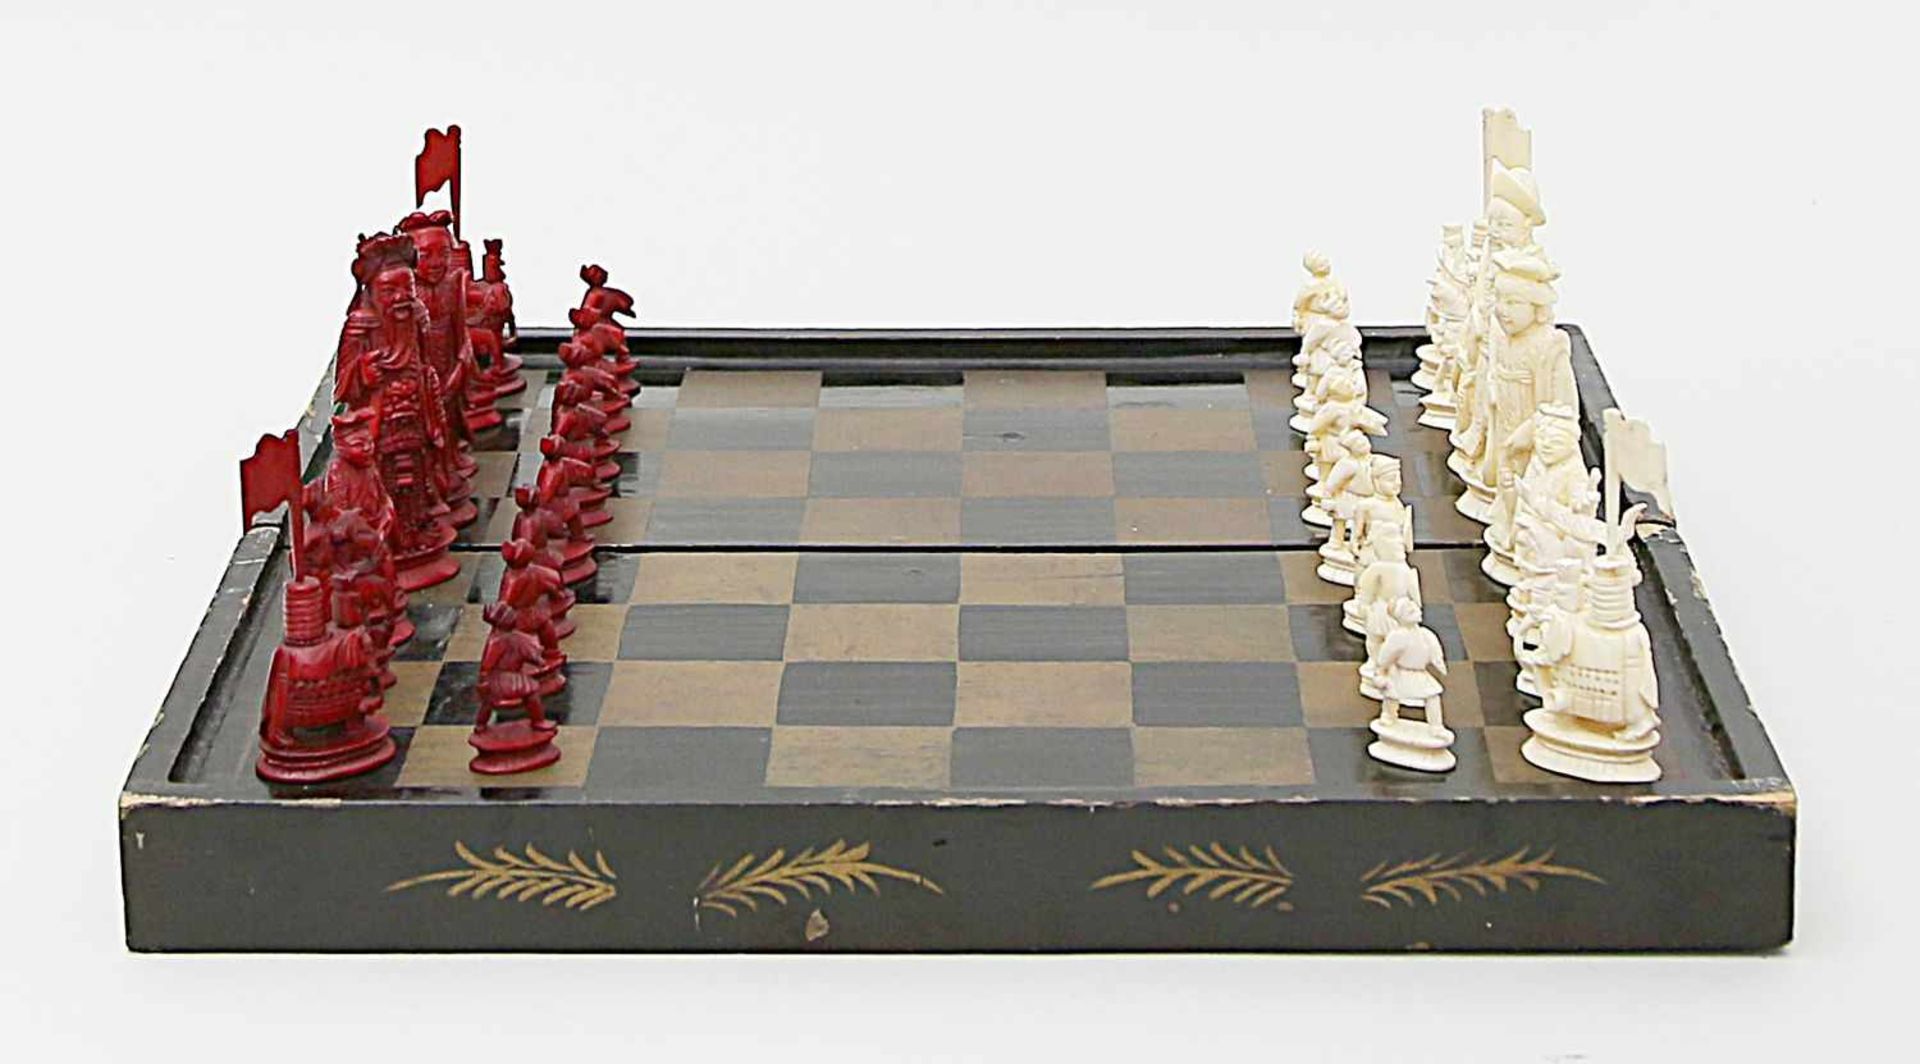 Schachspiel mit 32 Schachfiguren und Spielbrett.Elfenbein und Walrosszahn, geschnitzt. Die Figuren